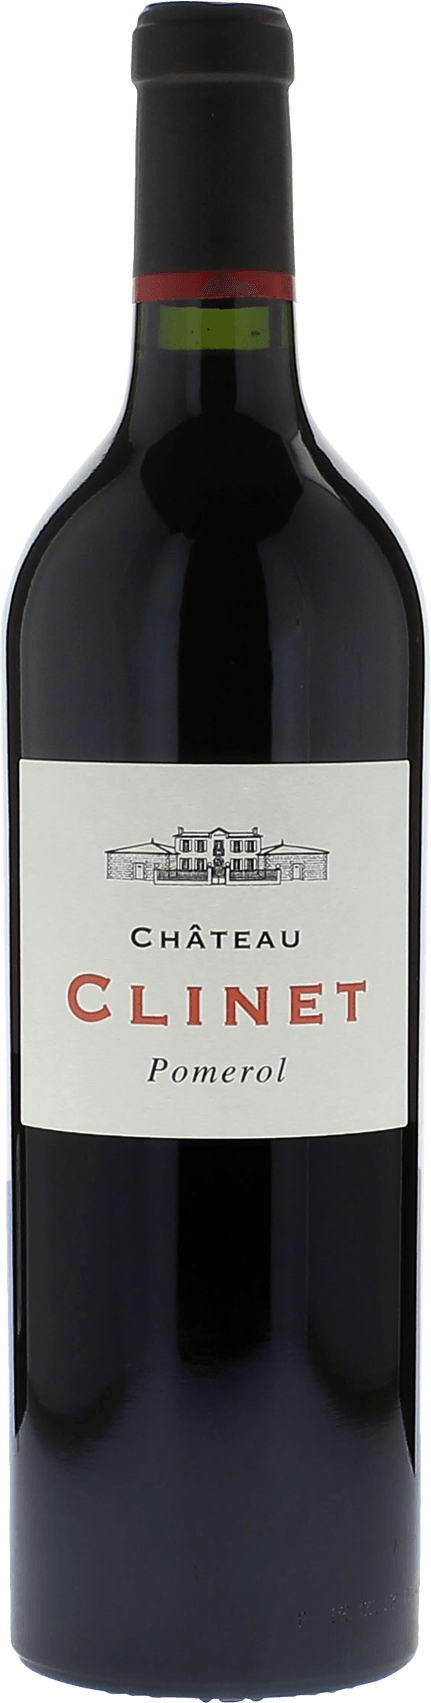 Clinet 2019  Pomerol, Bordeaux rouge